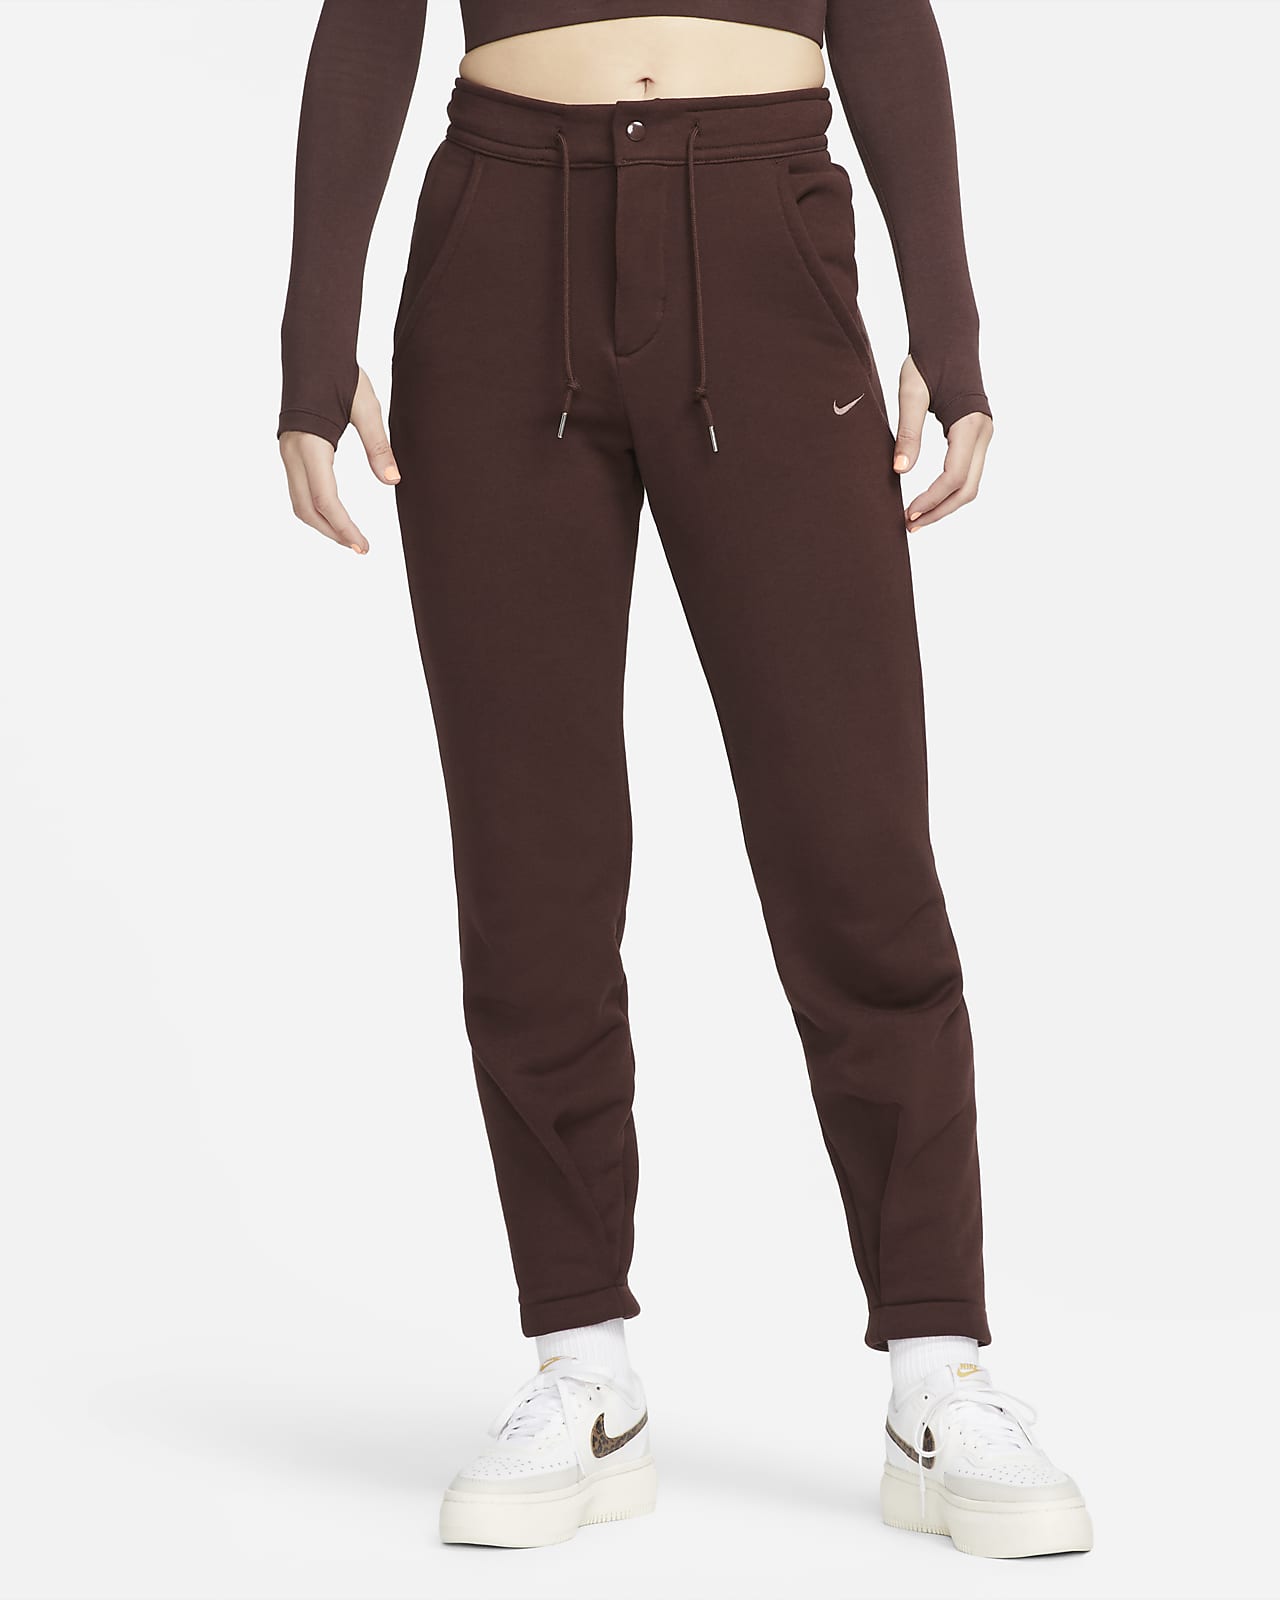 Pantalon taille haute en molleton Nike Sportswear Modern Fleece pour femme.  Nike LU